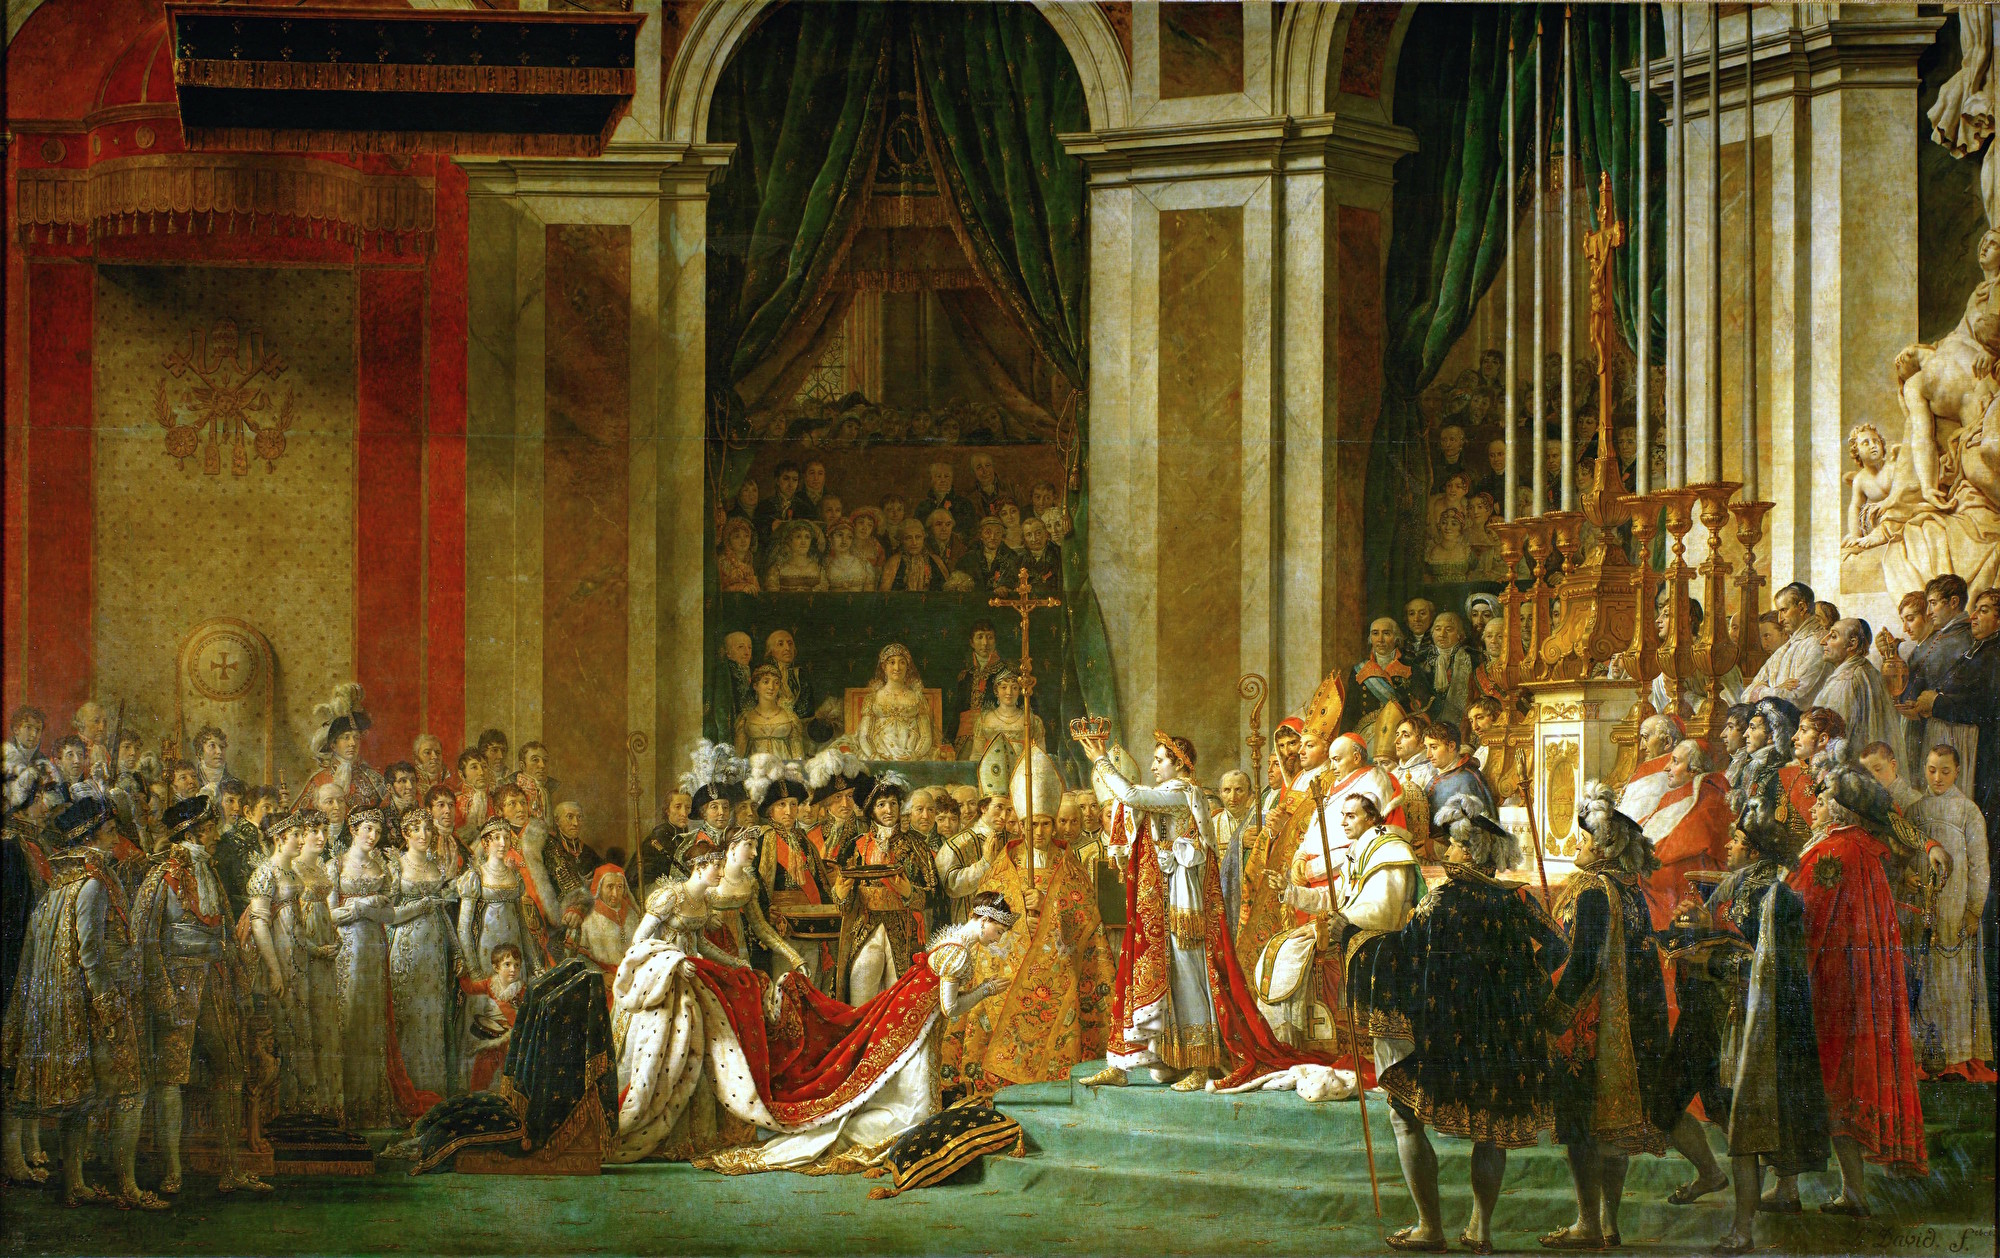 Bức “Lễ đăng quang” (Coronation) của Jacques-Louis David, 1805~1807, sơn dầu trên vải bạt, 610x931 cm, lưu trữ tại Bảo tàng Louvre, Paris, Pháp. (Ảnh: Tài sản công)